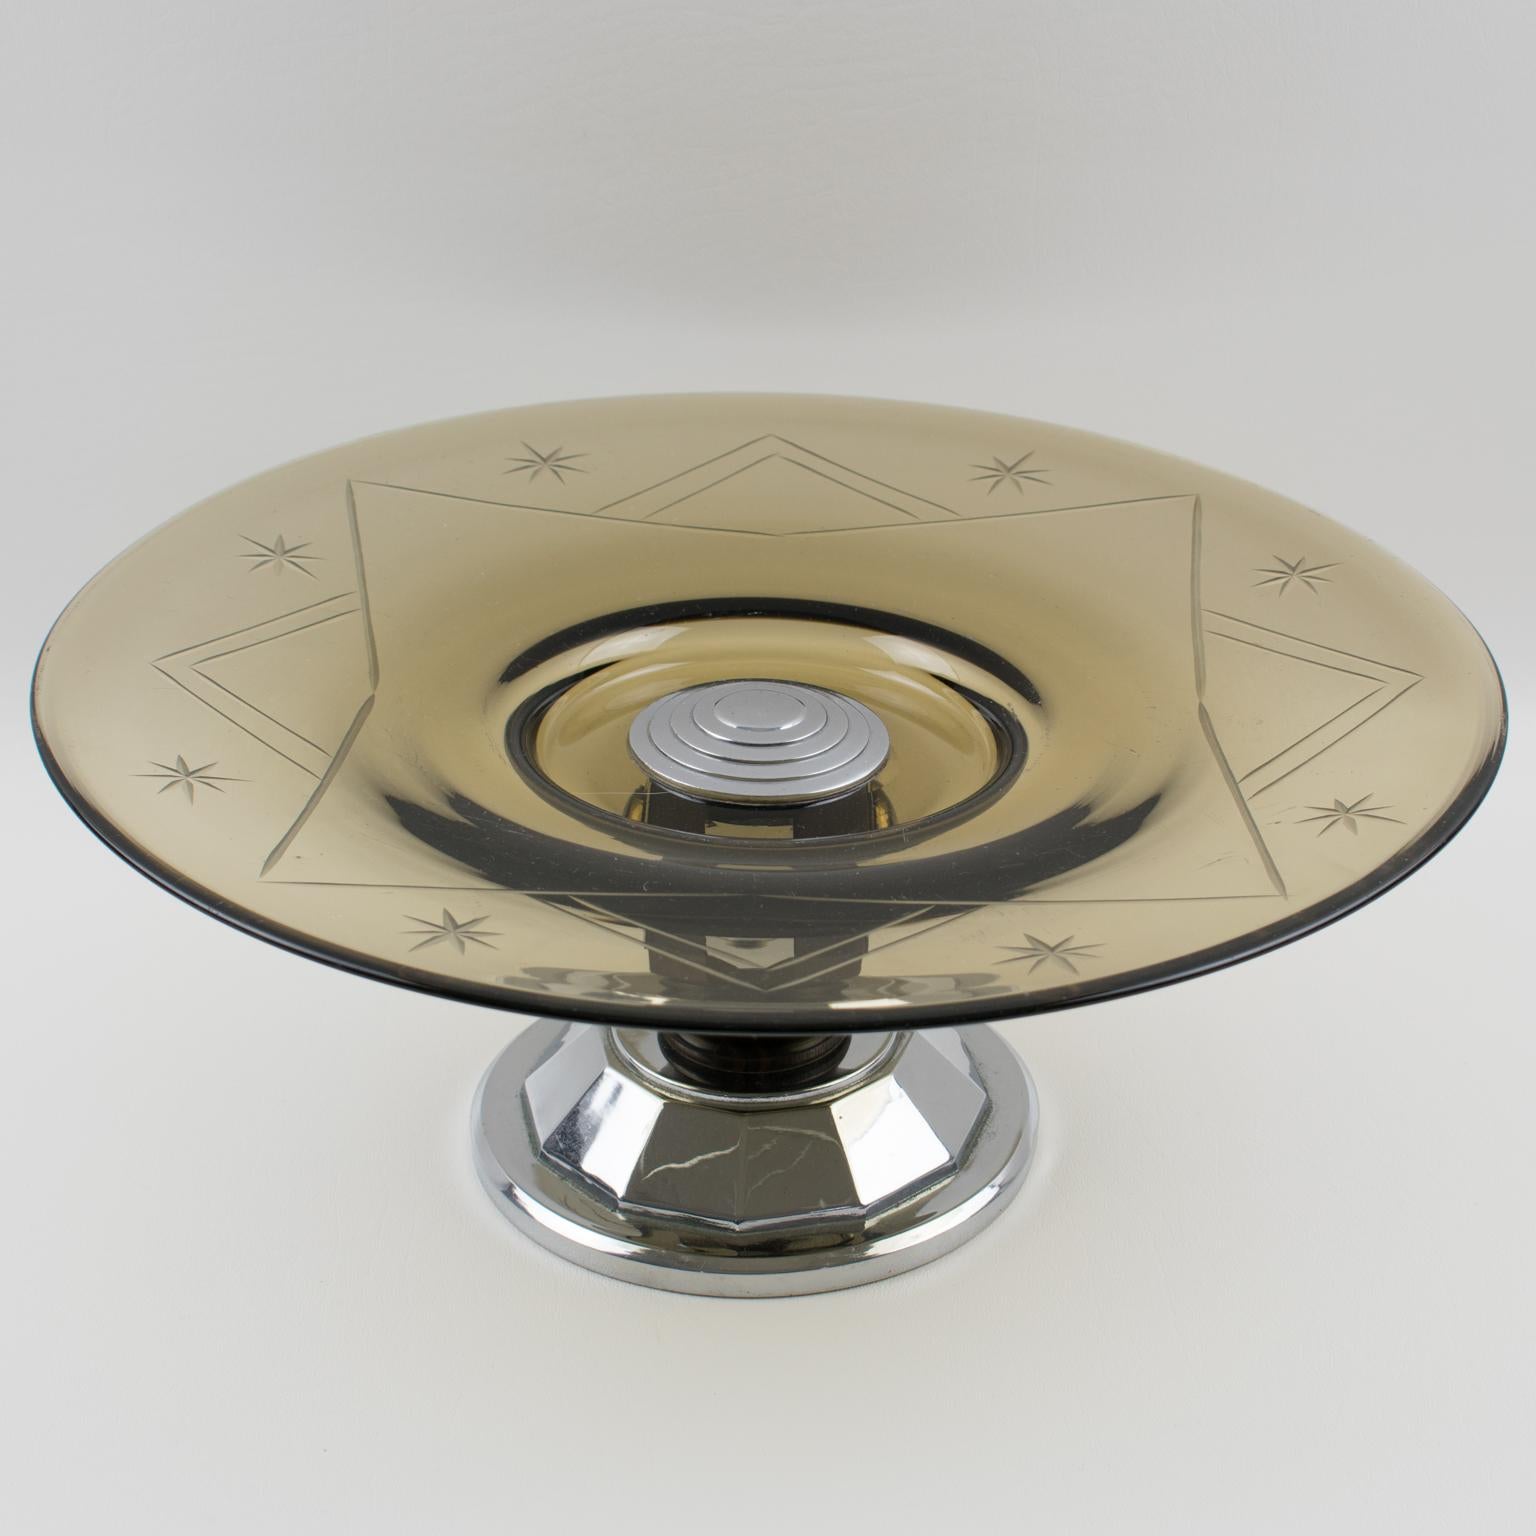 Cet élégant centre de table ou bol de service décoratif moderniste de style Art déco français présente un grand bol rond en verre avec un motif gravé dans une belle couleur gris fumée transparente. Le socle est en métal chromé et en bois de Macassar